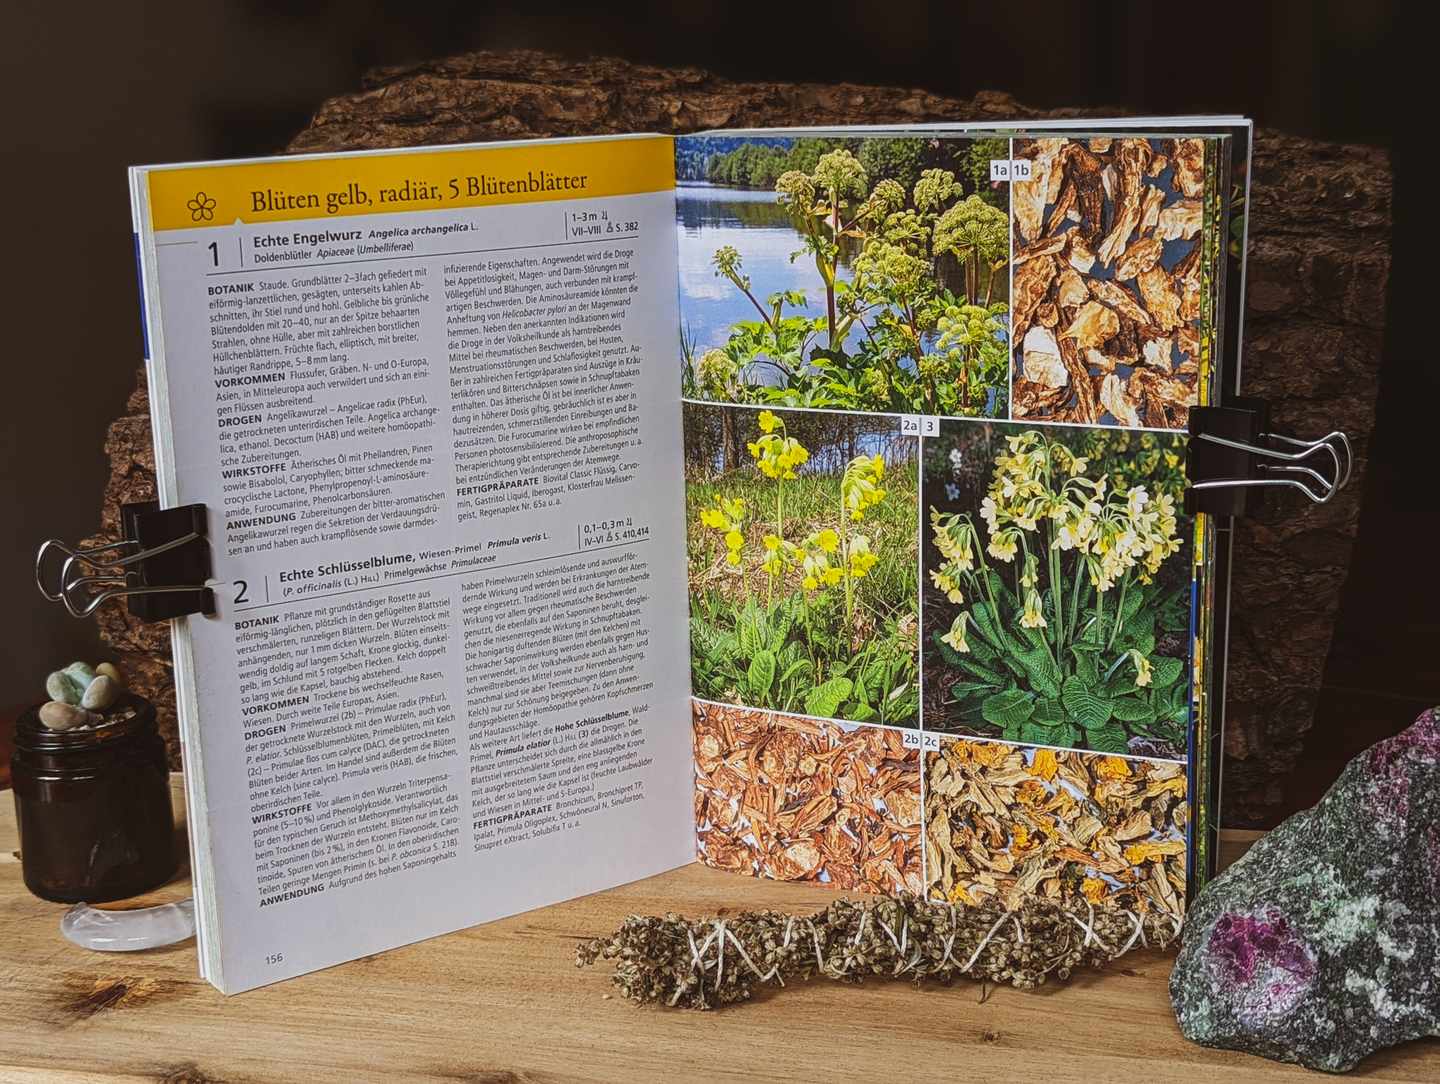 Der aufgeschlagene Heilpflanzenführer. Zu sehen ist eine Doppelseite. Links Informationstext zu Pflanzen und rechts Fotobeispiele.